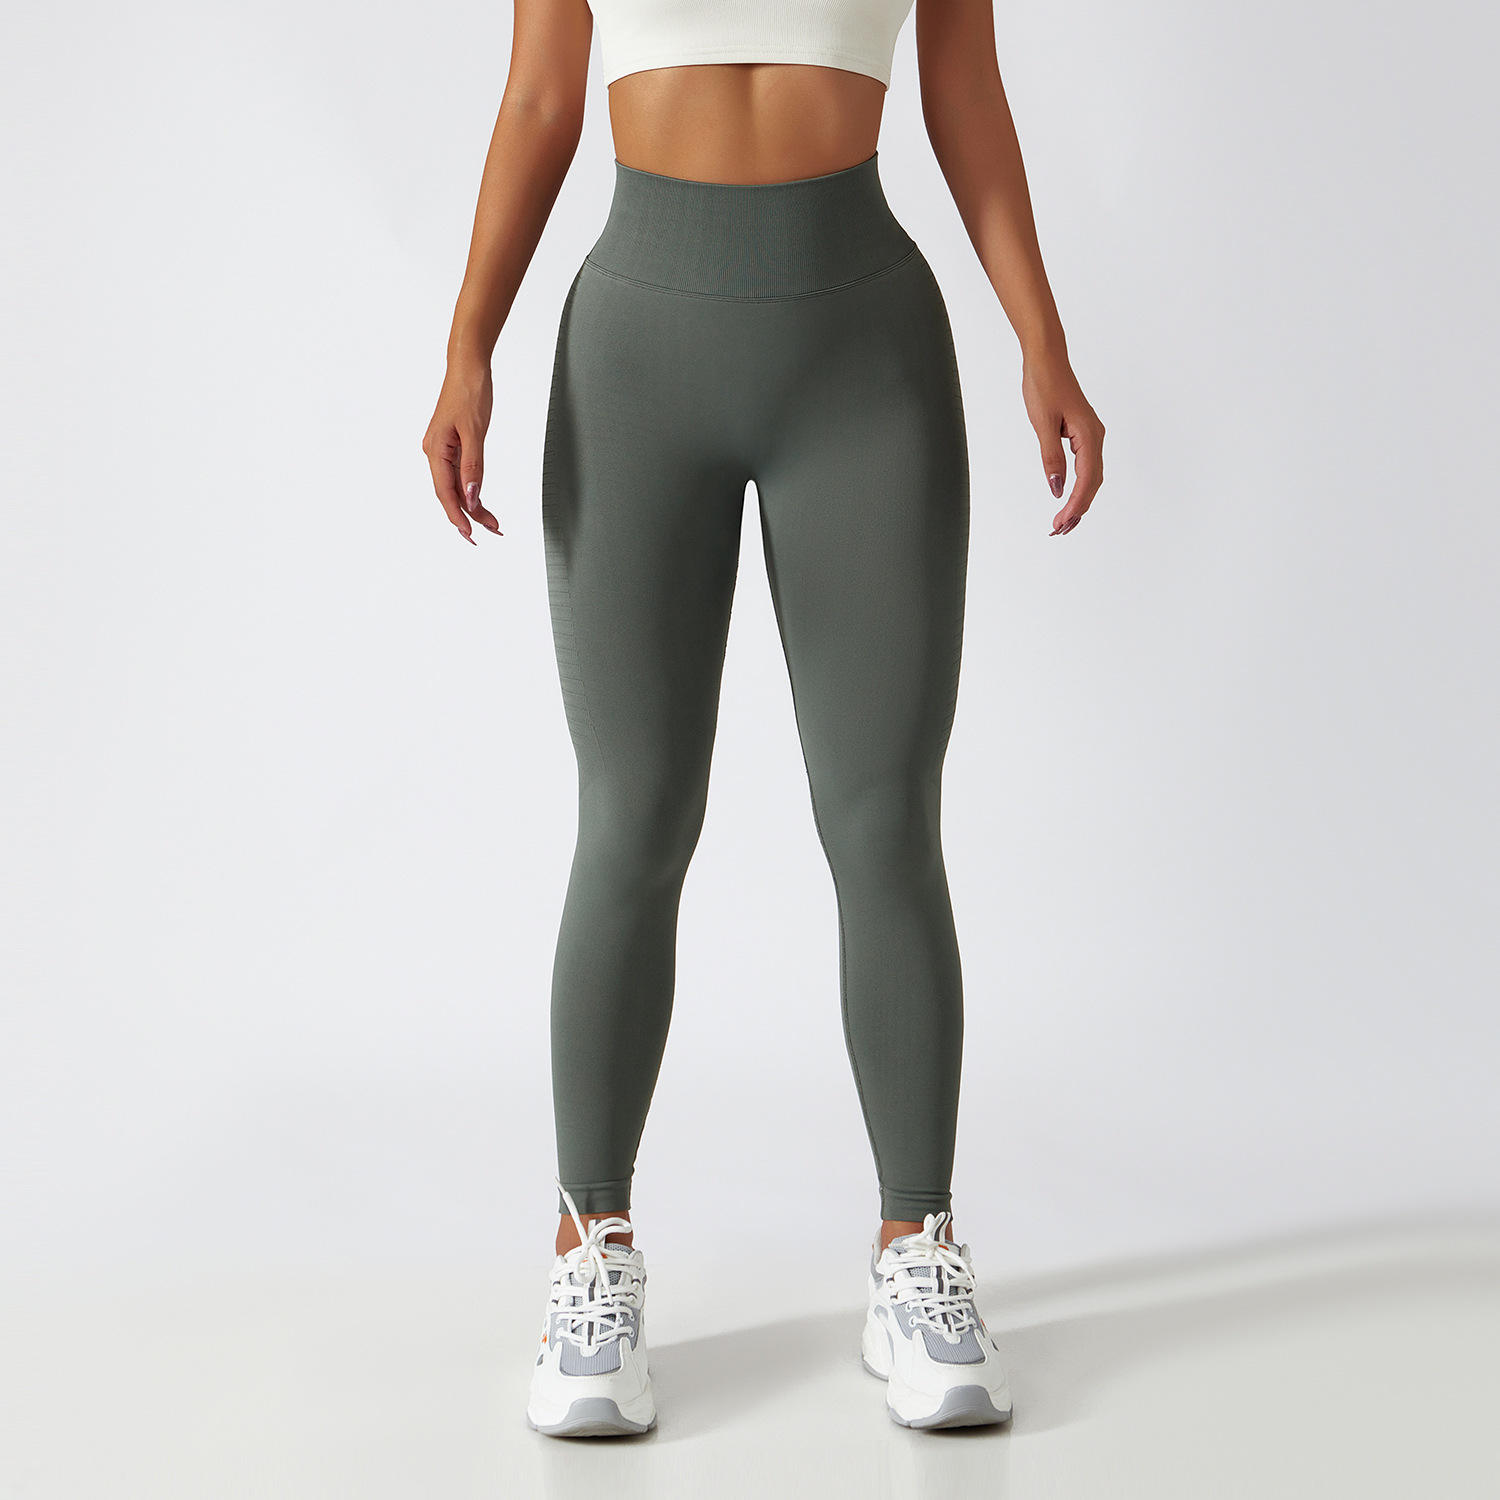 Seamless Butt Lift Yoga Leggings High Waist Stretch Workout Leggings Fast Dry Running Fitness Leggings